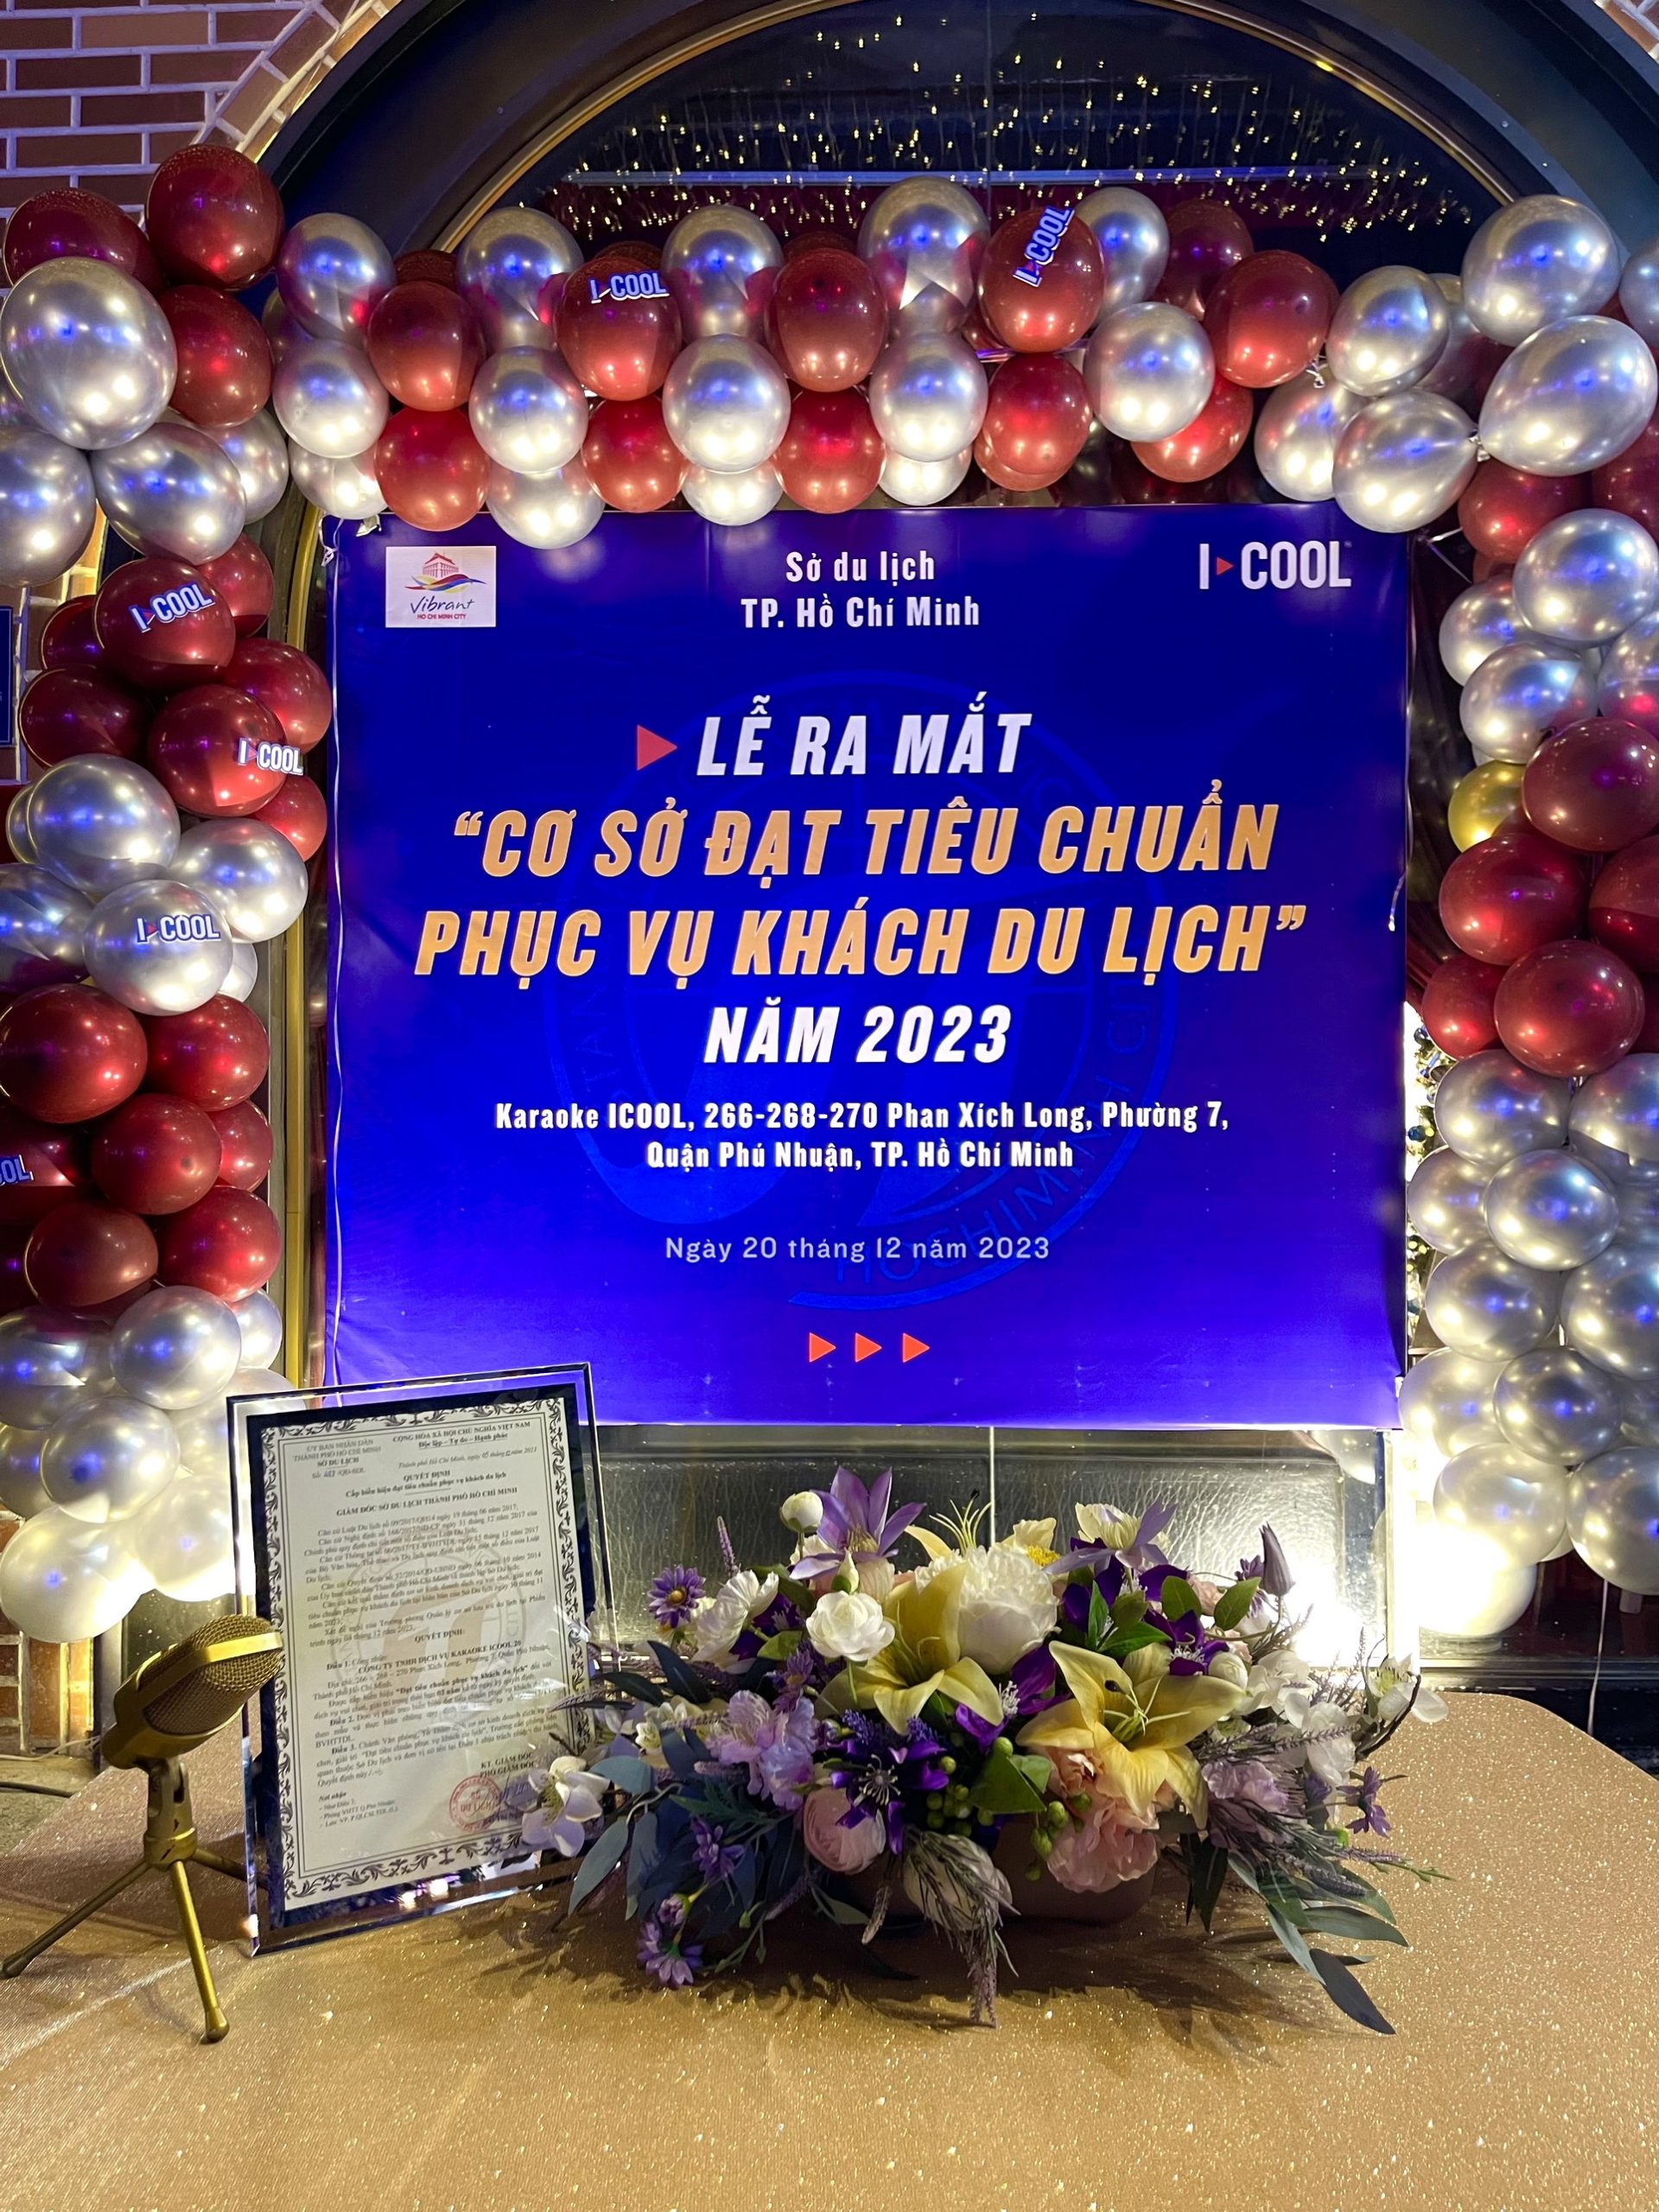 Lễ ra mắt "Cơ sở đạt tiêu chuẩn phục vụ khách du lịch" tại chi nhánh Phan Xích Long